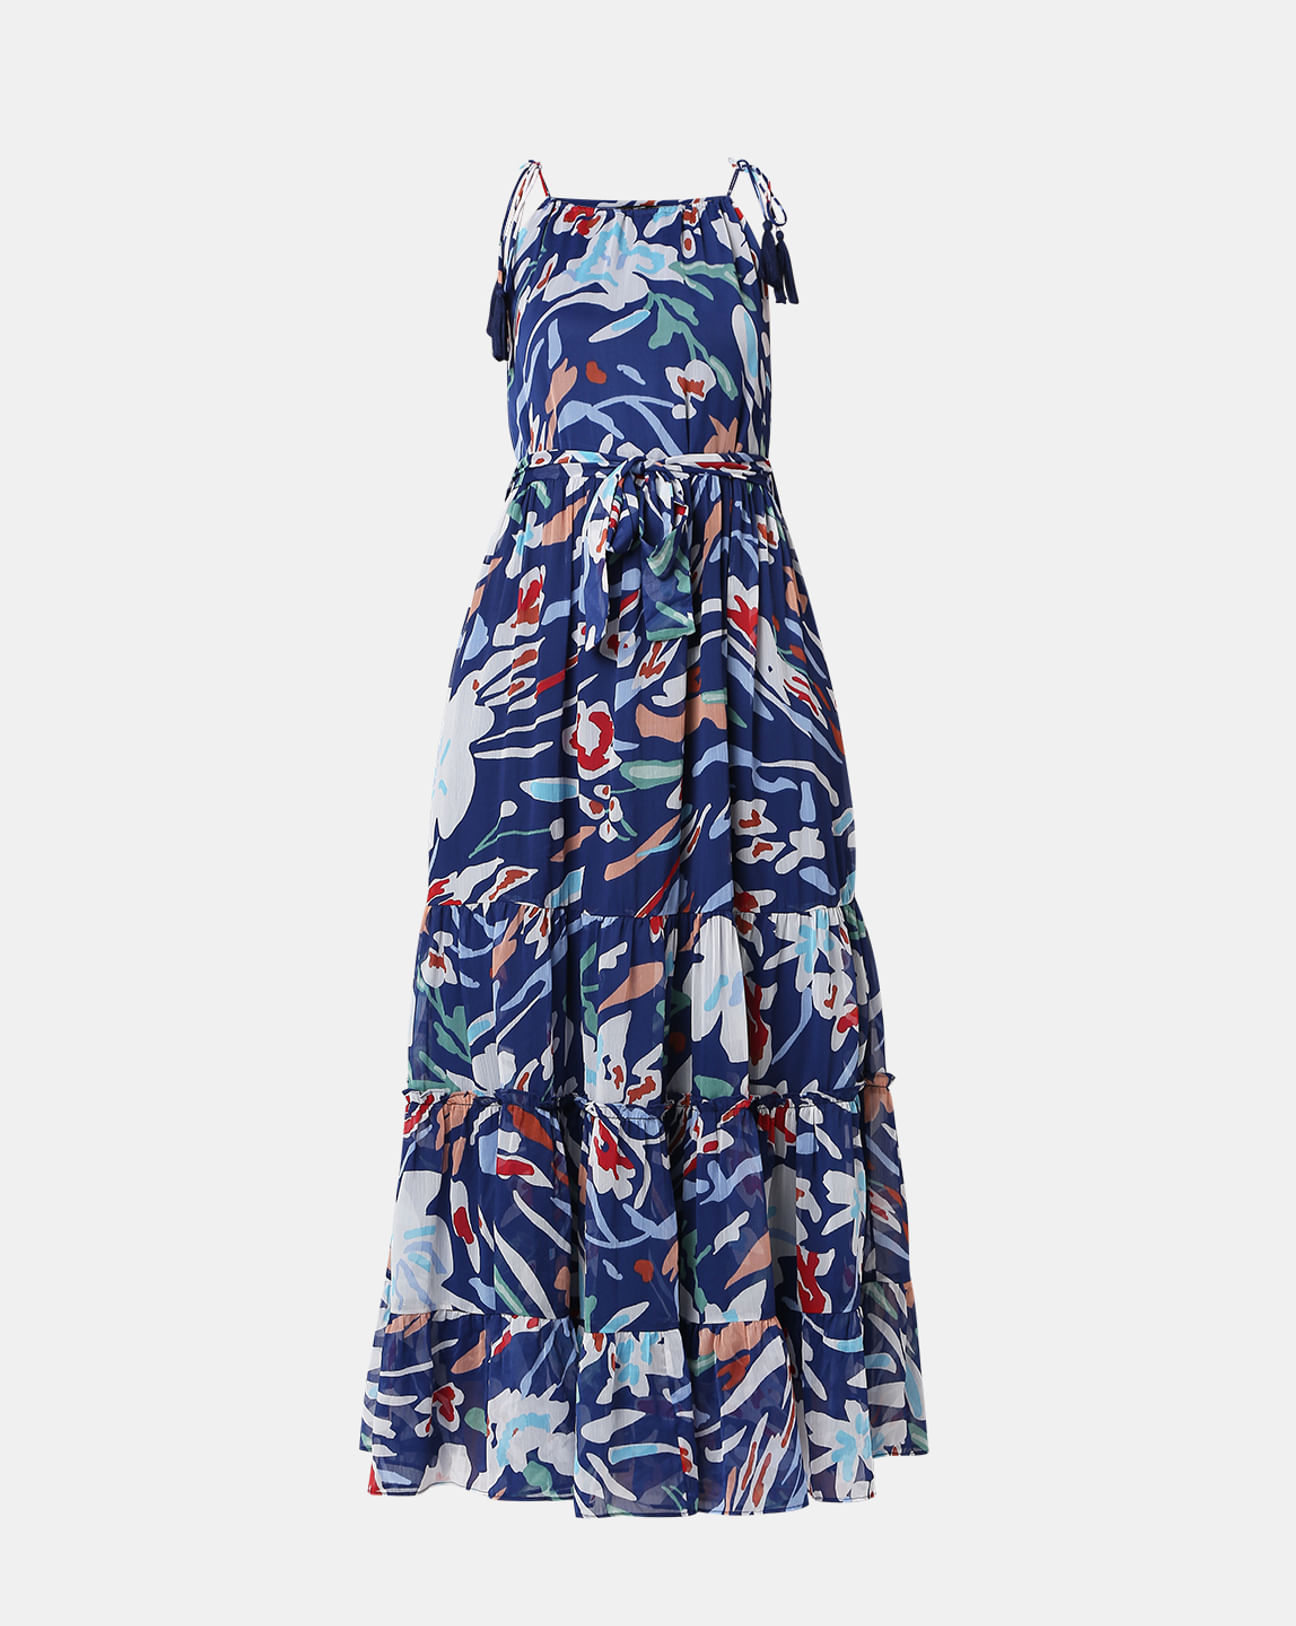 Blue Maxi Dress - Floral Print Maxi Dress - Tie-Strap Maxi Dress - Lulus